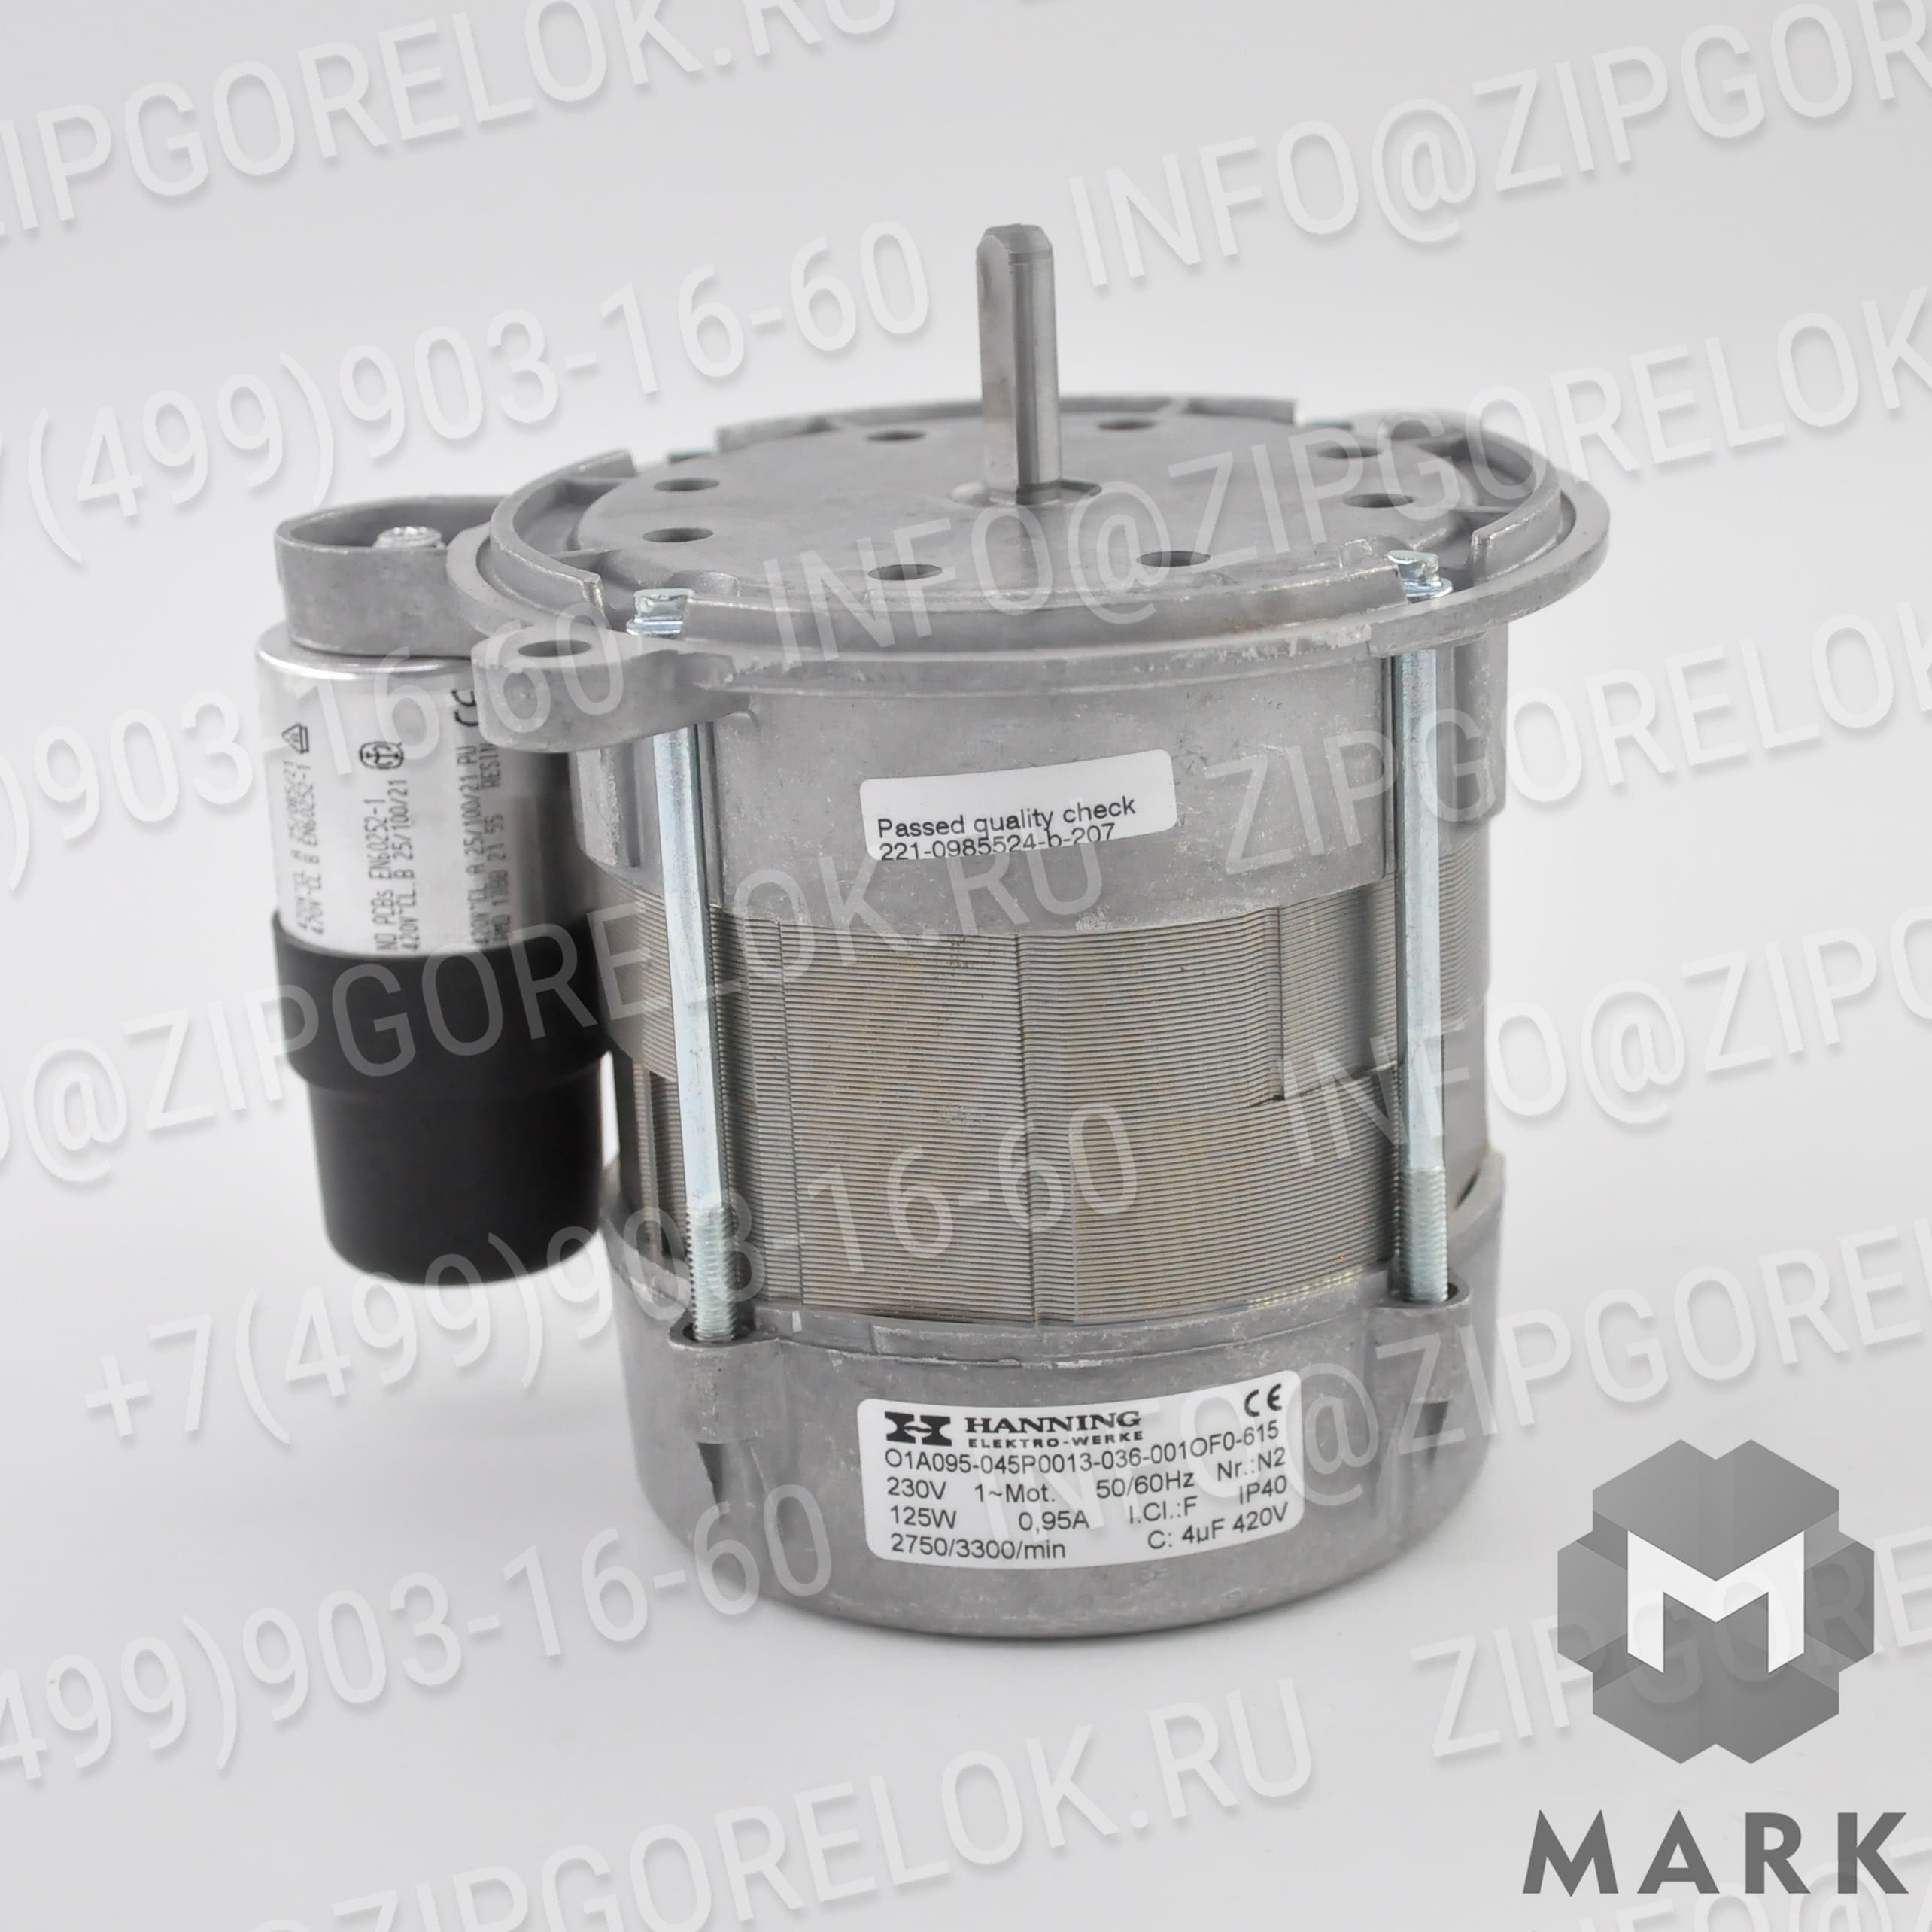 92090001 Жидкотопливные компоненты: Жидкотопливный шланг 1,5 м R1/2" - G3/4"